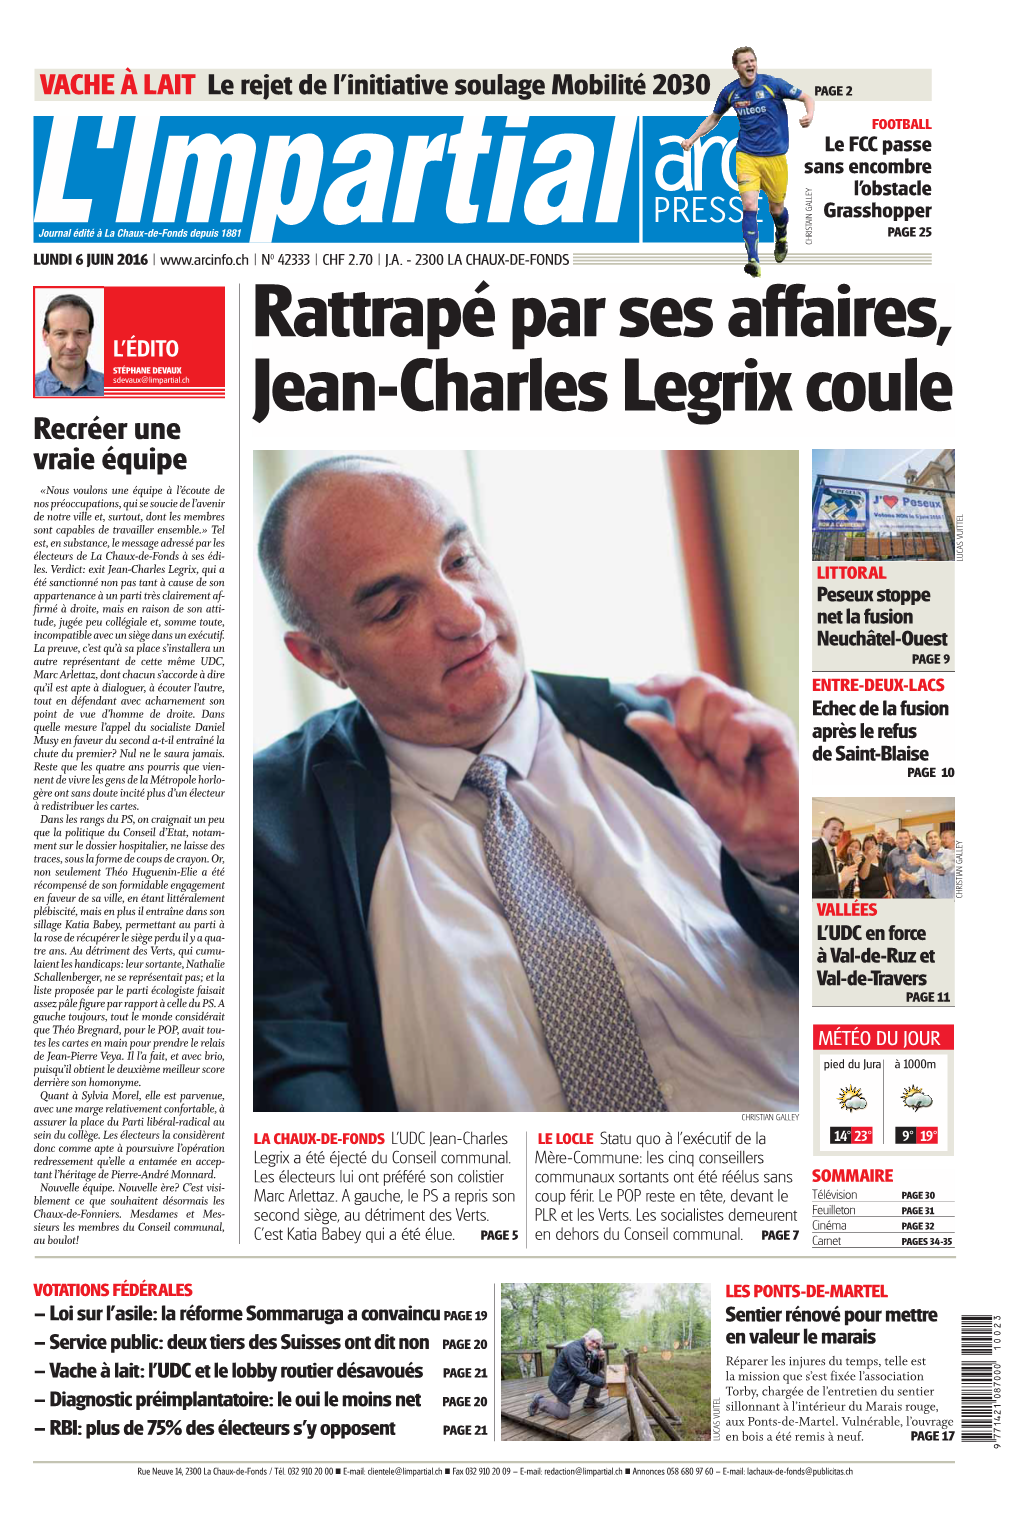 Rattrapé Par Ses Affaires, Jean-Charles Legrix Coule